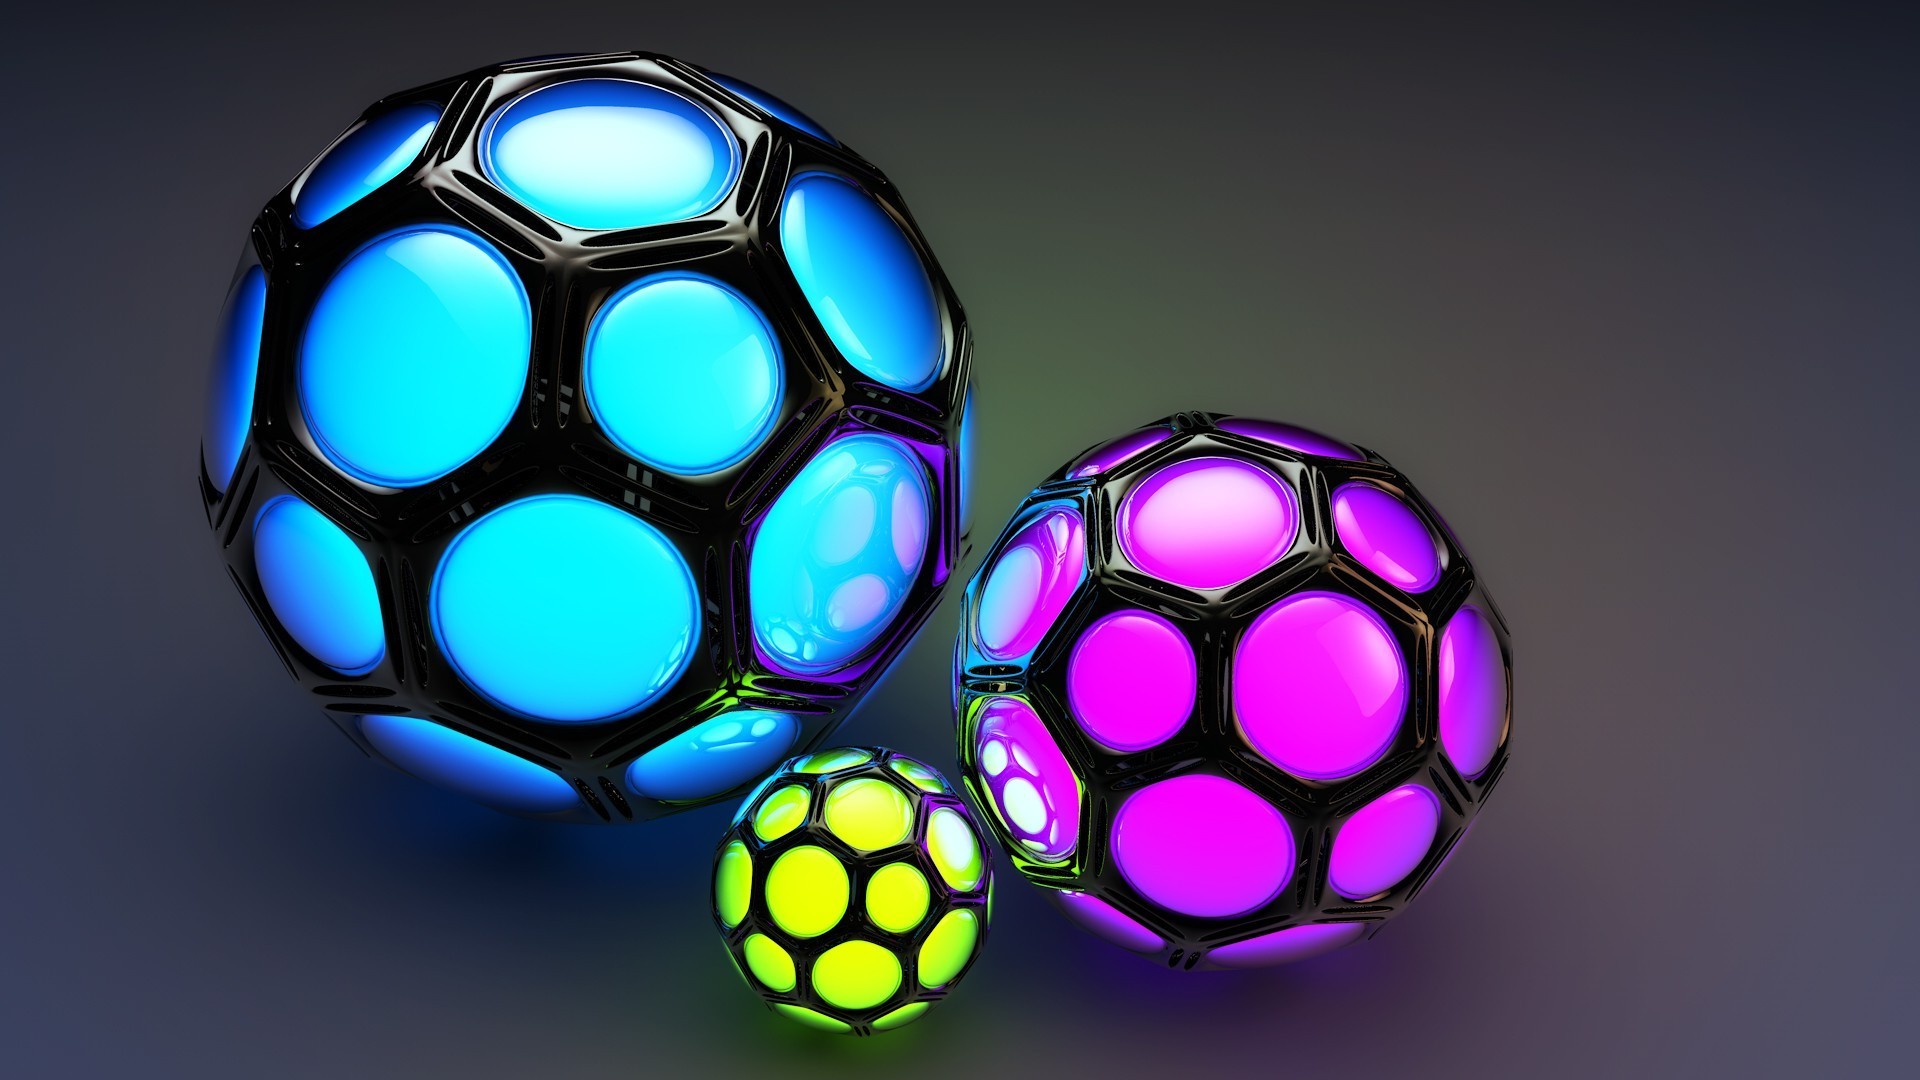 Cool balls. 3д обои. 3д обои на рабочий стол. Цветные мячики. Яркие обои 3d.